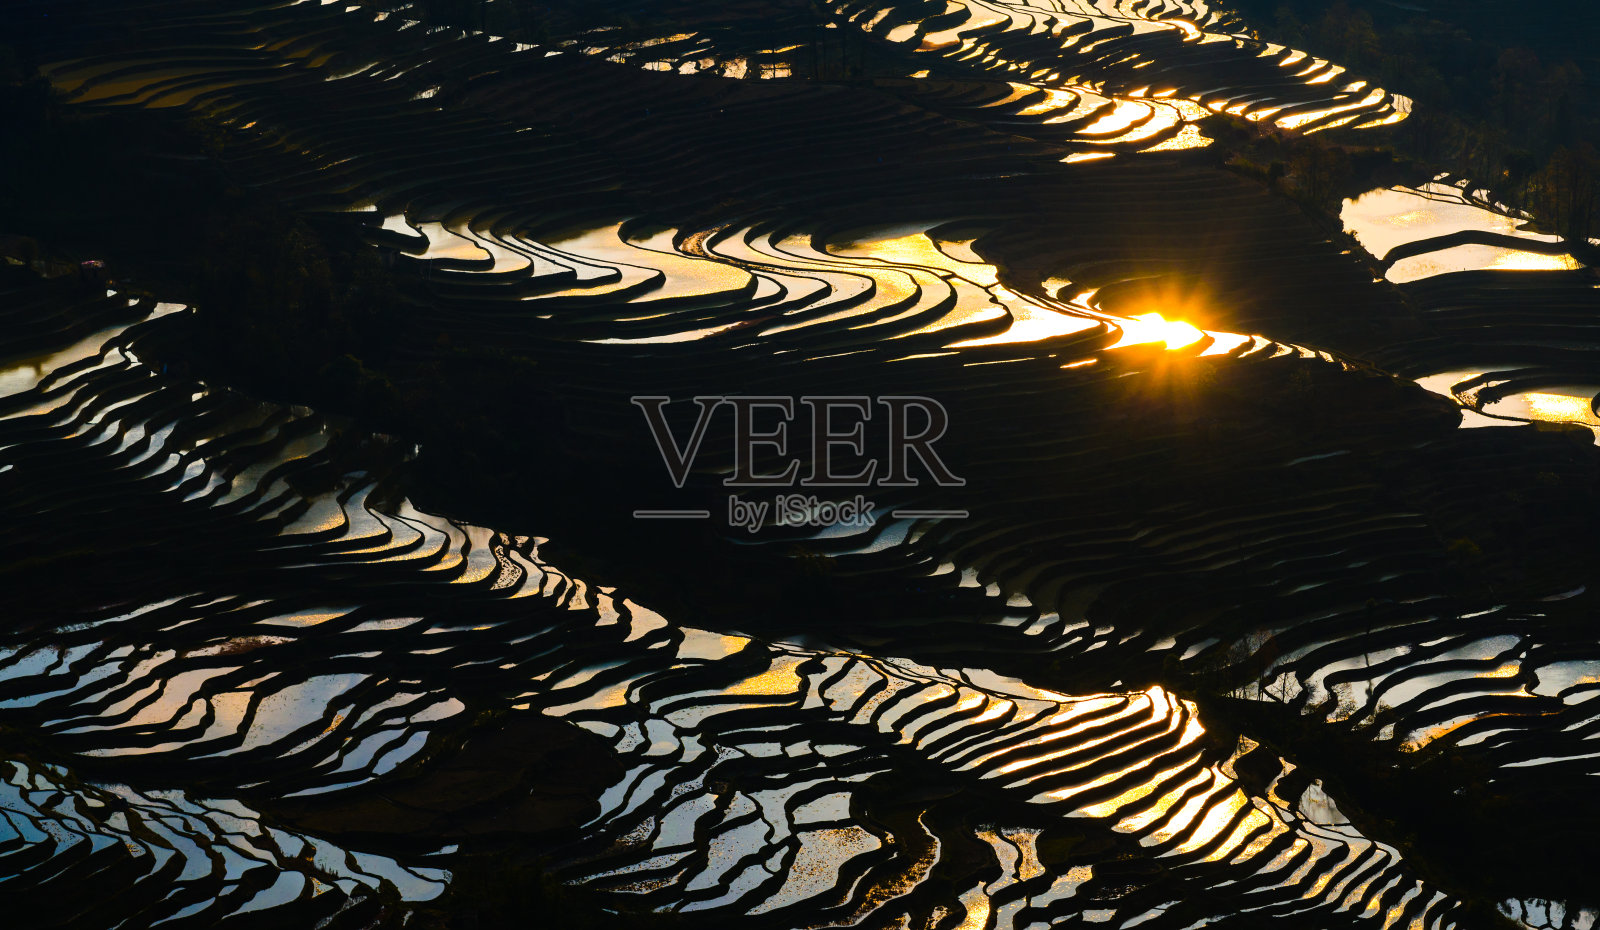 中国云南省，日出时的鸳鸯梯田照片摄影图片